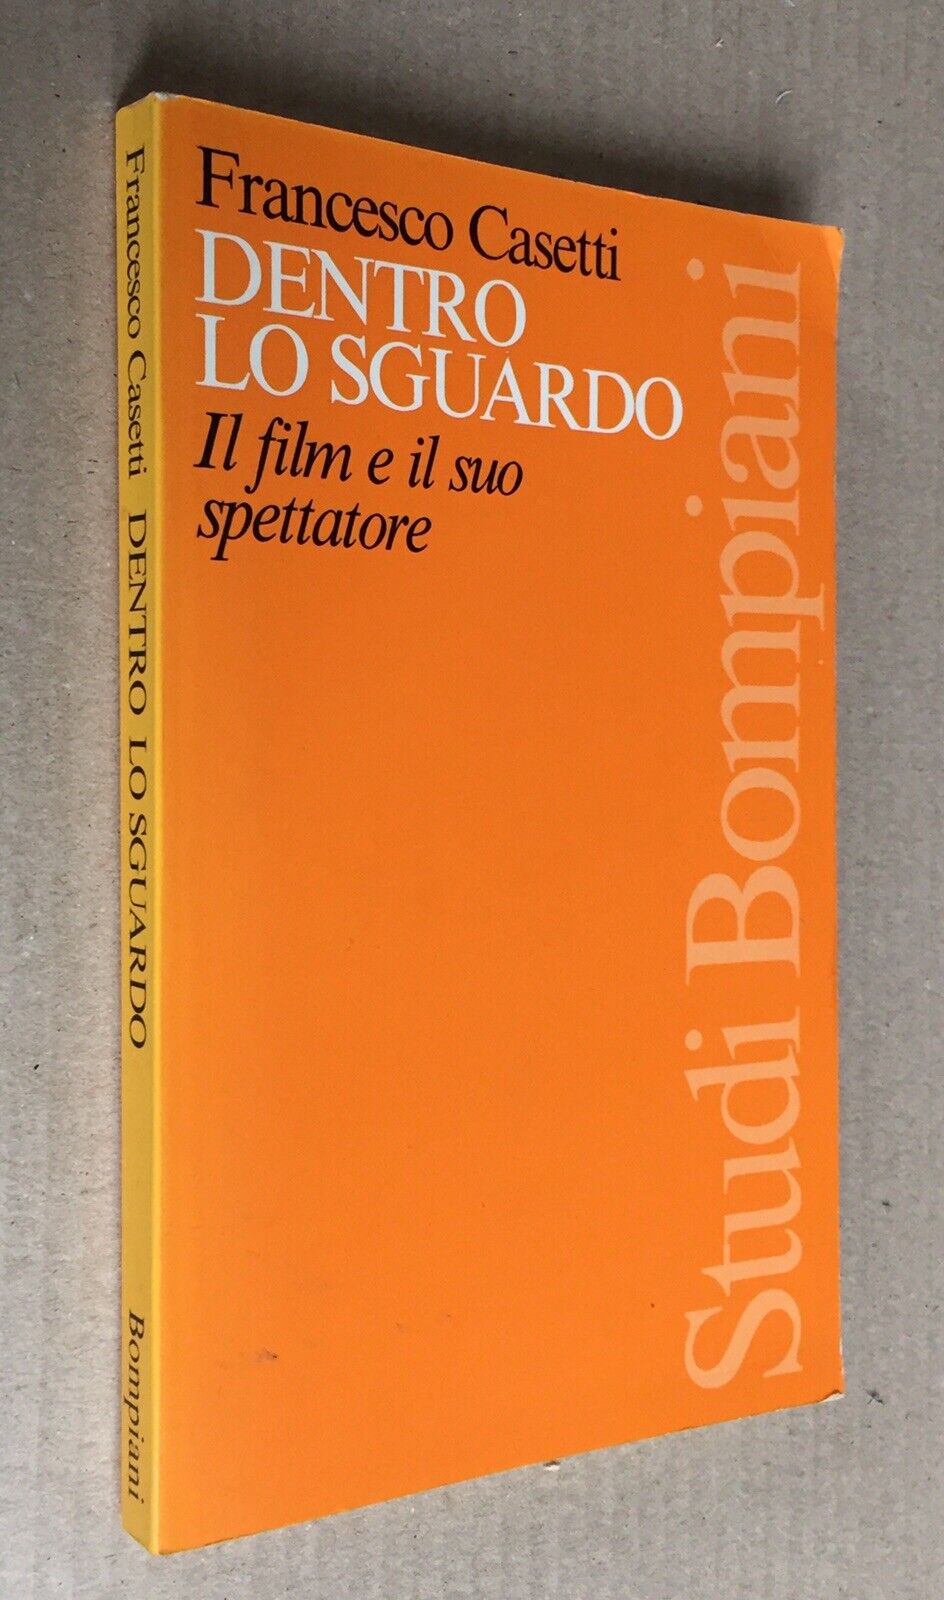 Dentro lo Sguardo - Francesco Casetti - Bompiani 1994